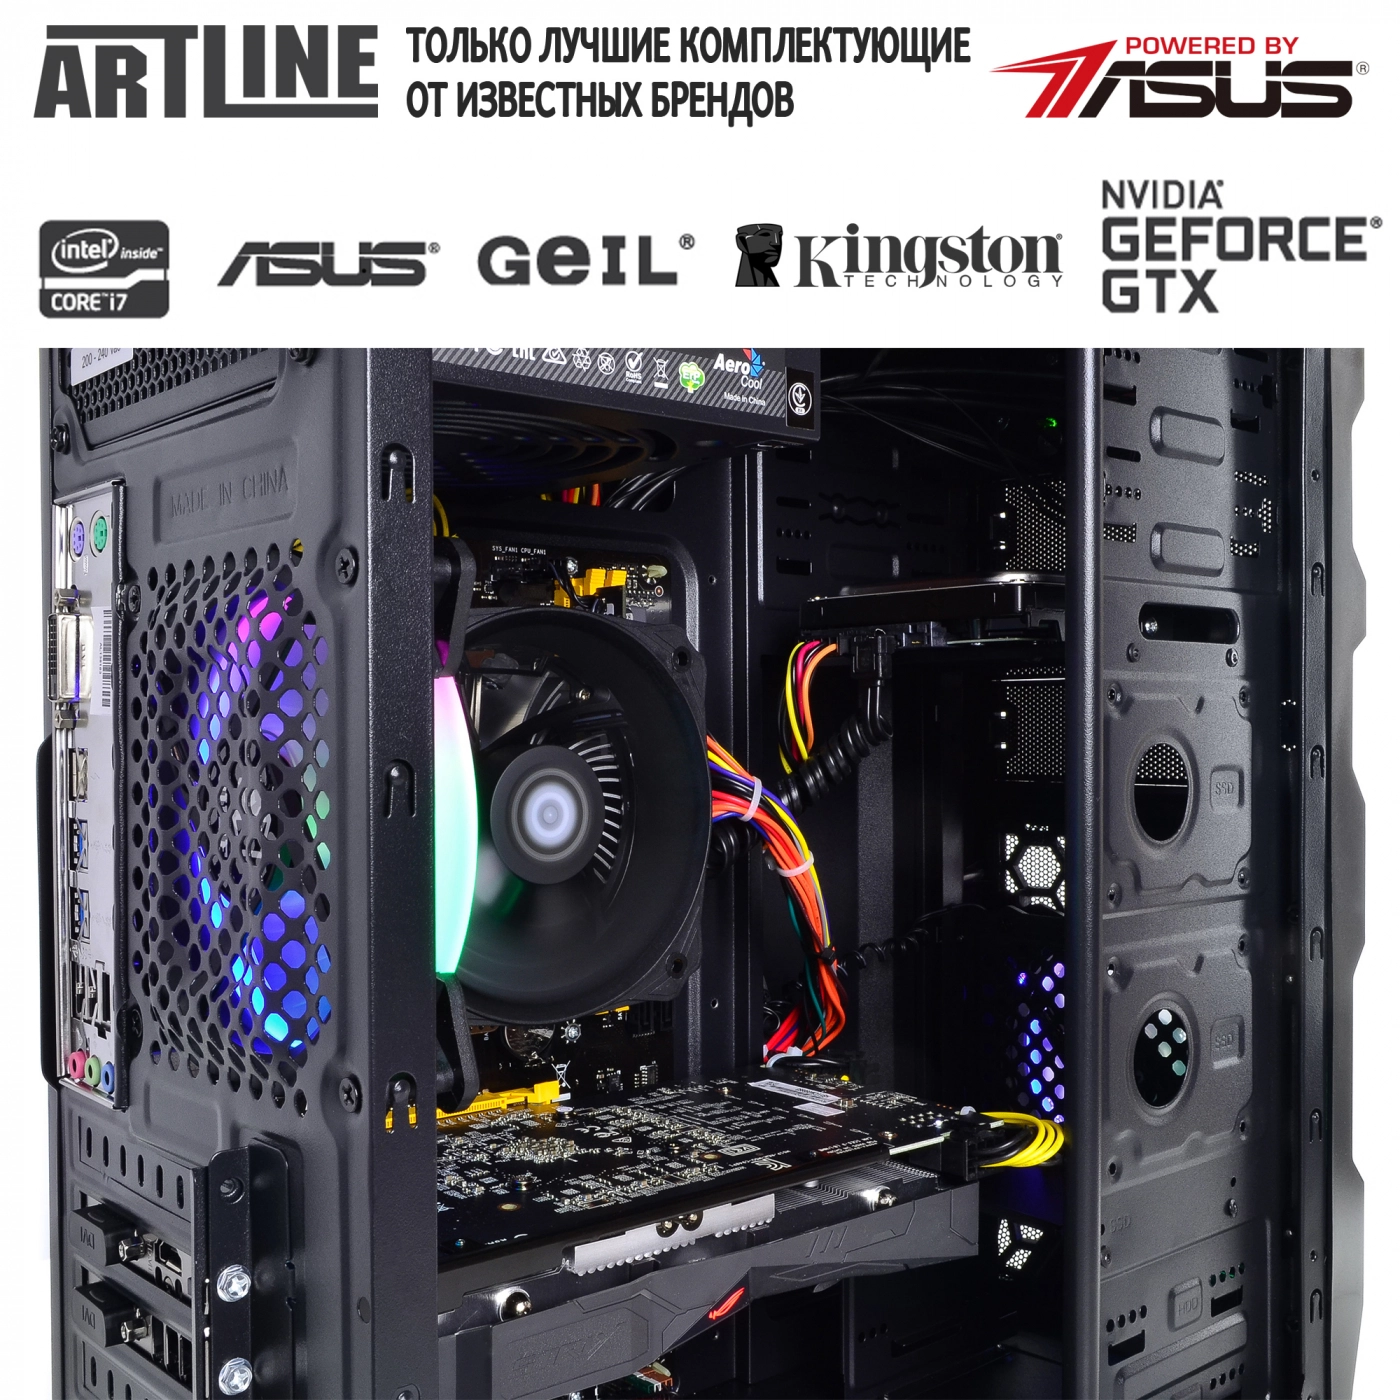 Купить Компьютер ARTLINE Gaming X46v28 - фото 6